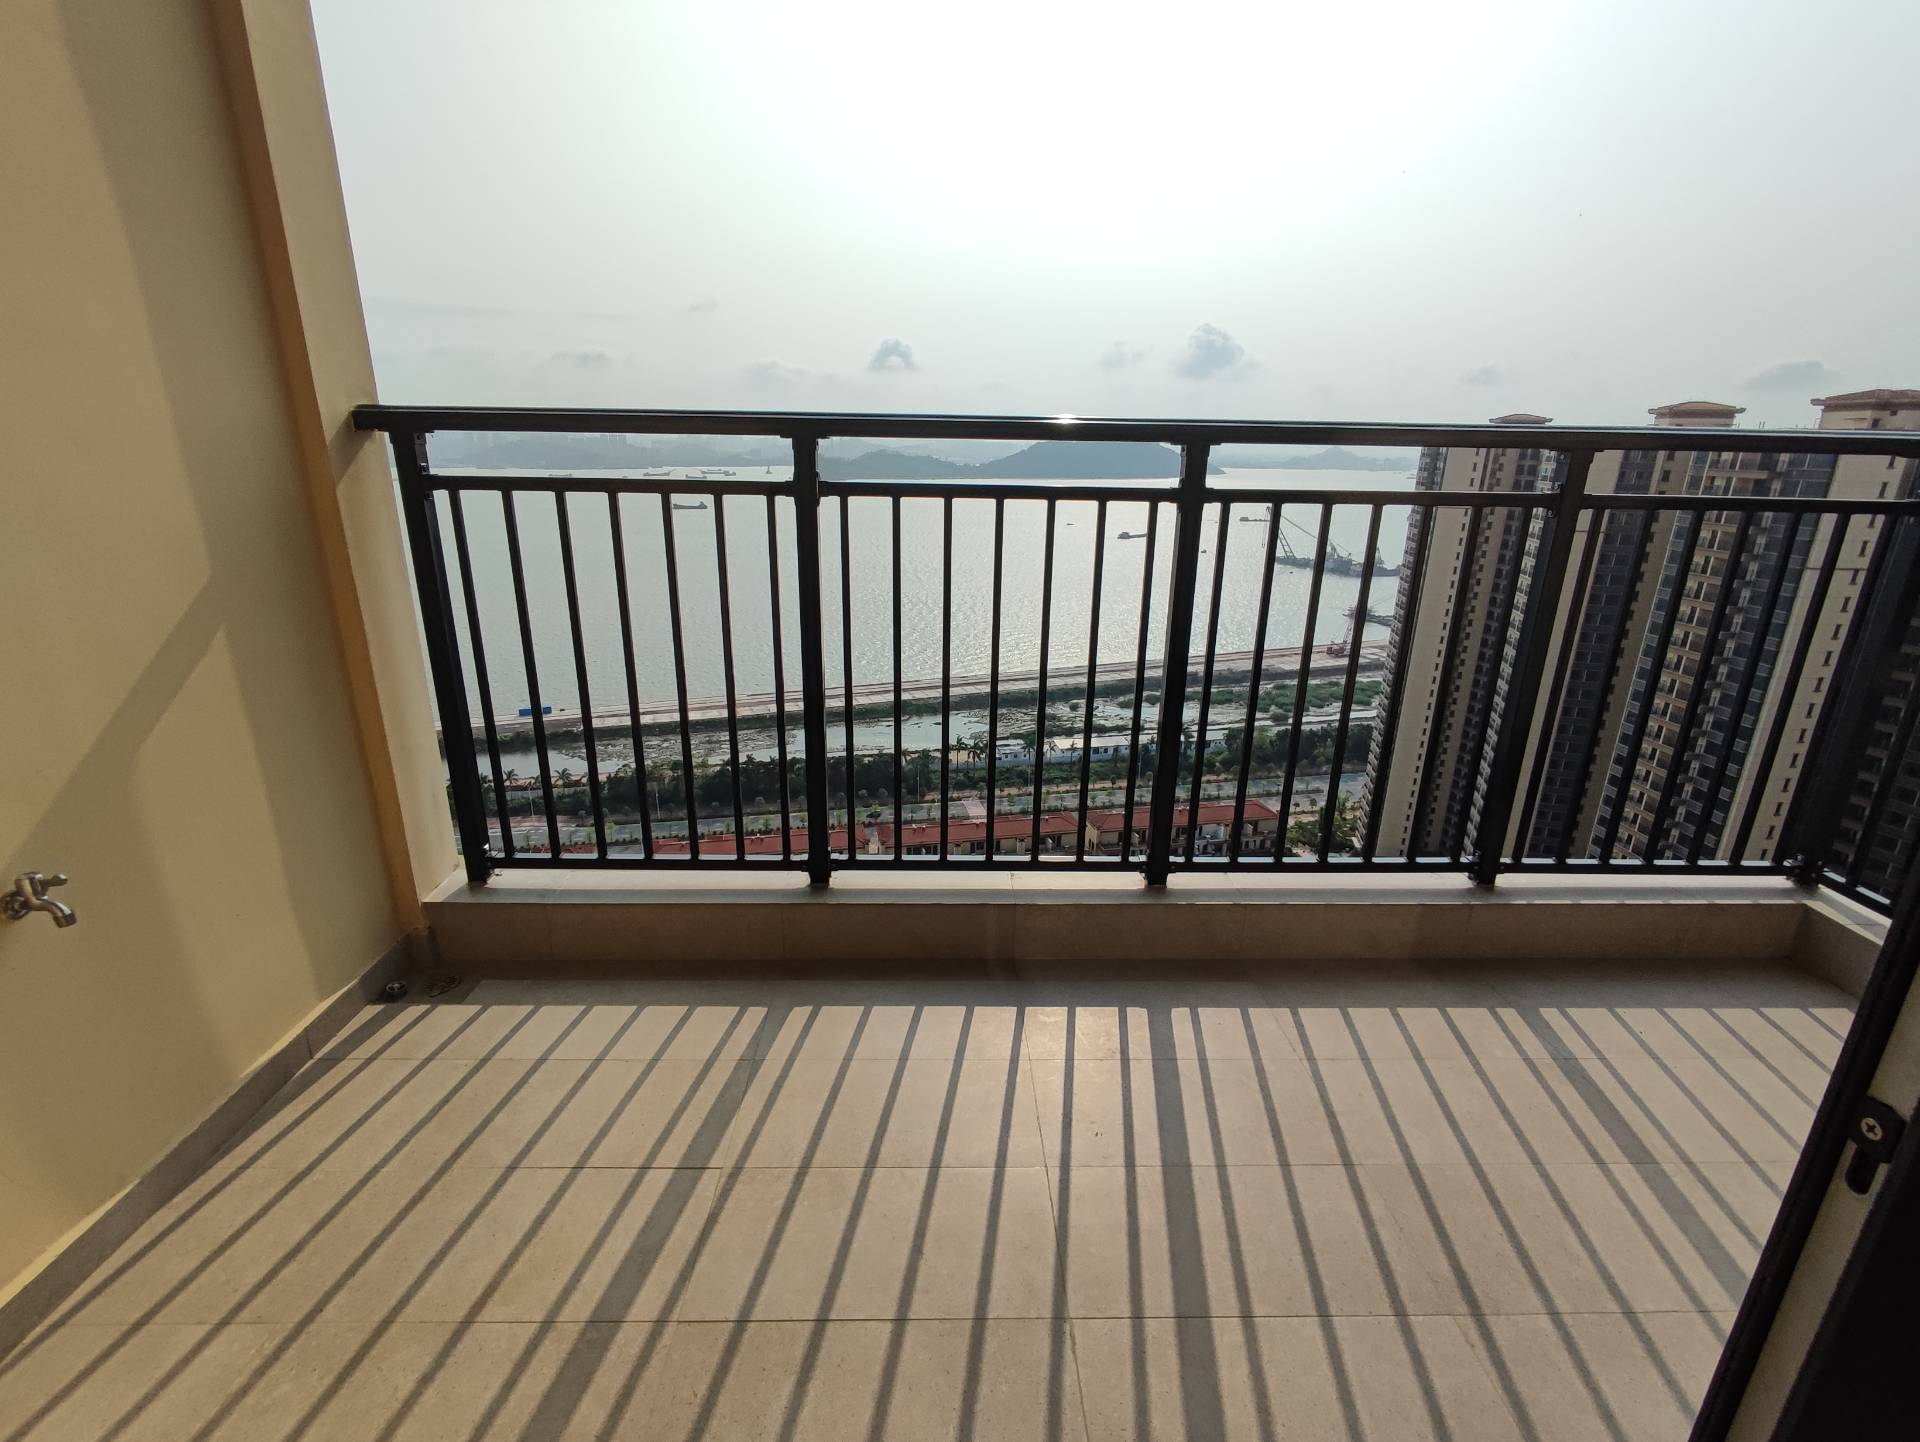 碧海云天 首次出租 拎包入住3房 3卧室和阳台180度面向江景(图4)